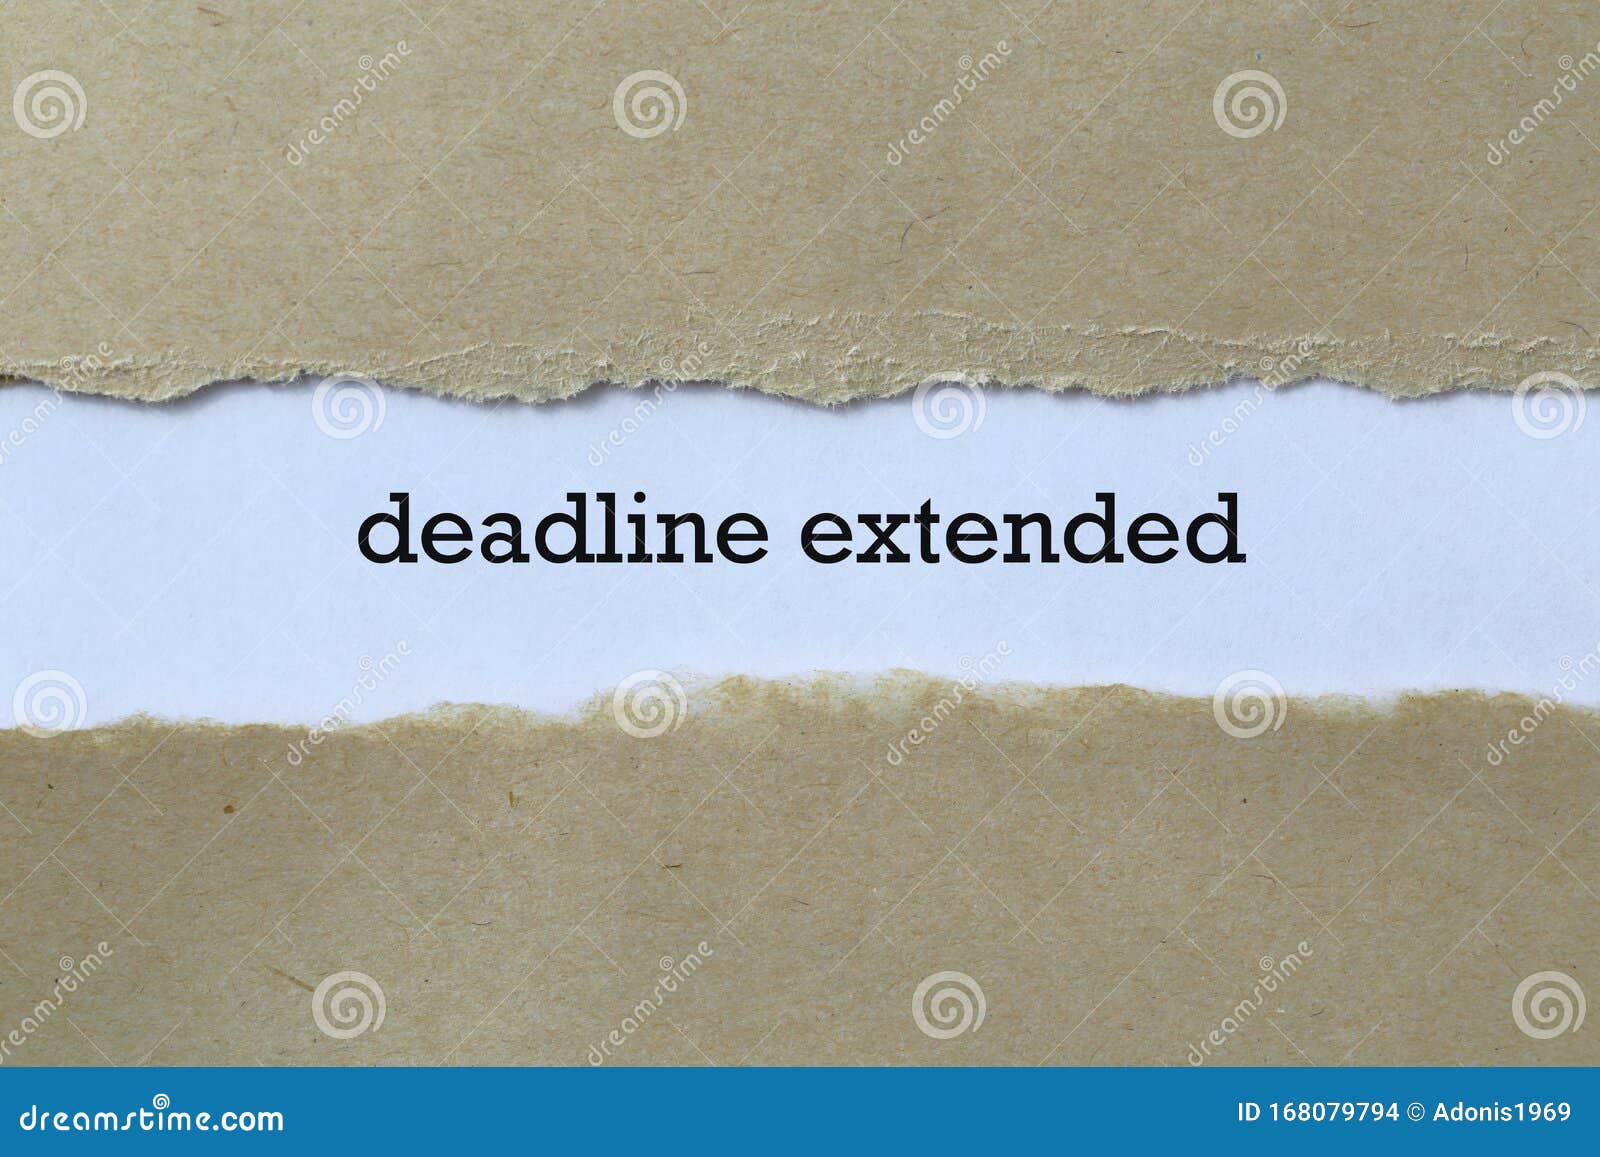 deadline extended on paper